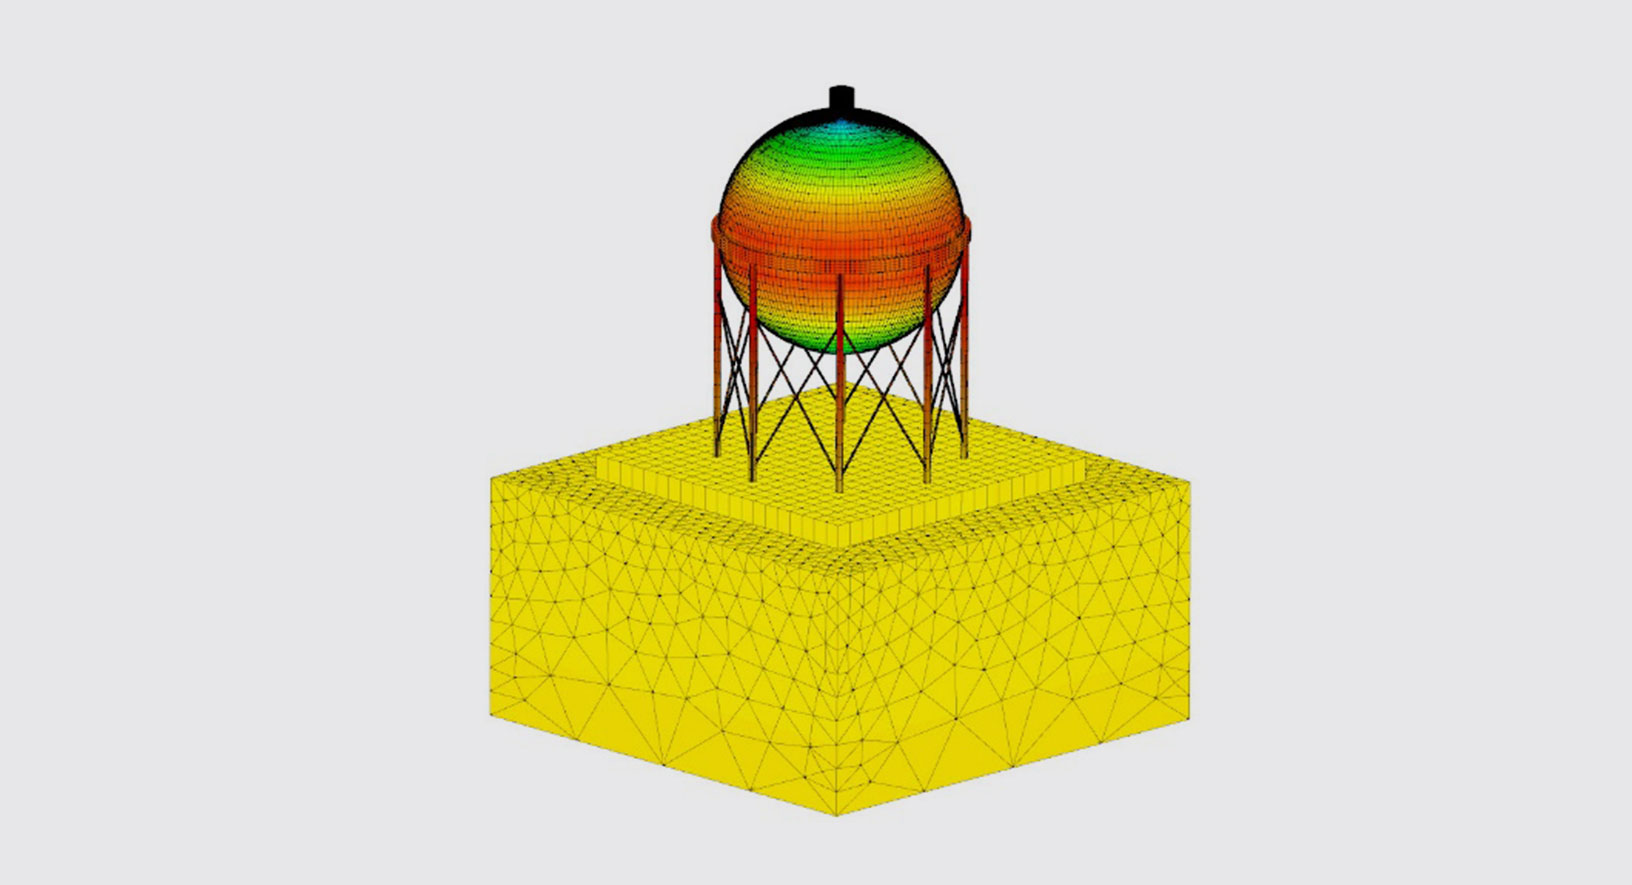 Simulação multifísica para a análise estrutural de refinaria usando o CivilFEM, desenvolvido pela Marc